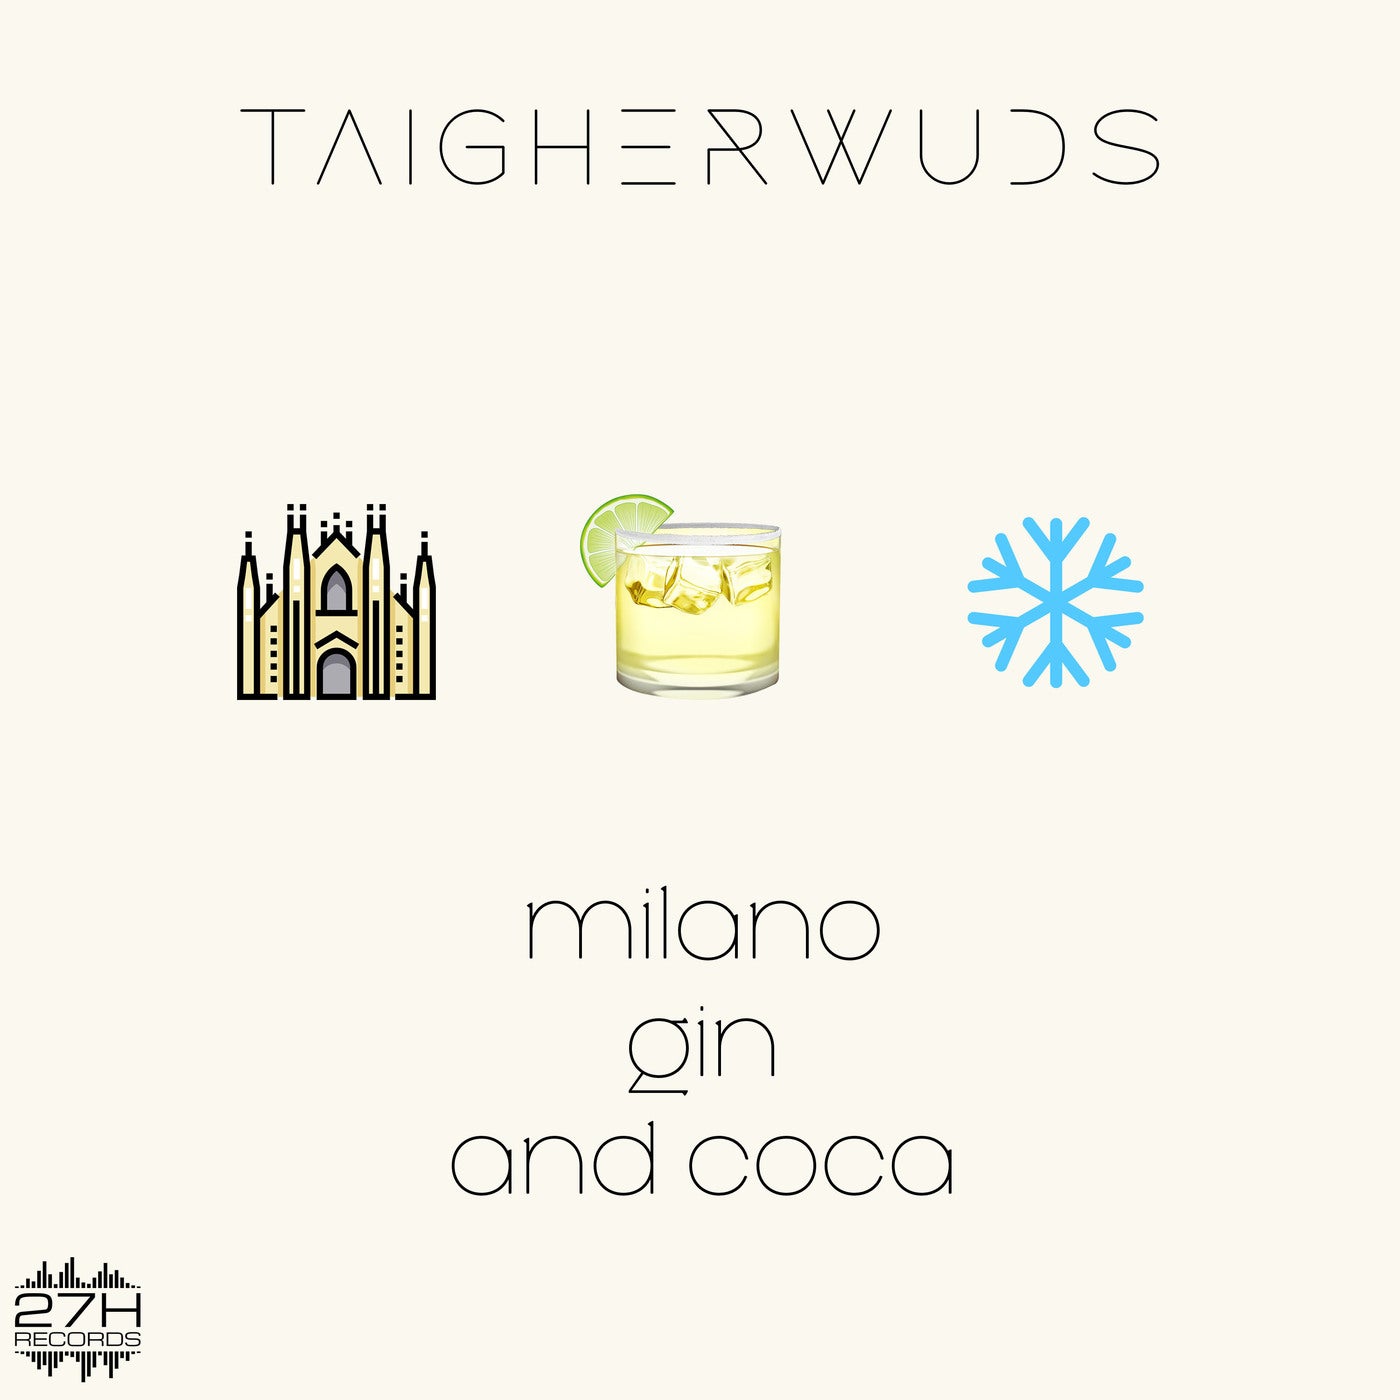 Milano Gin and Coca